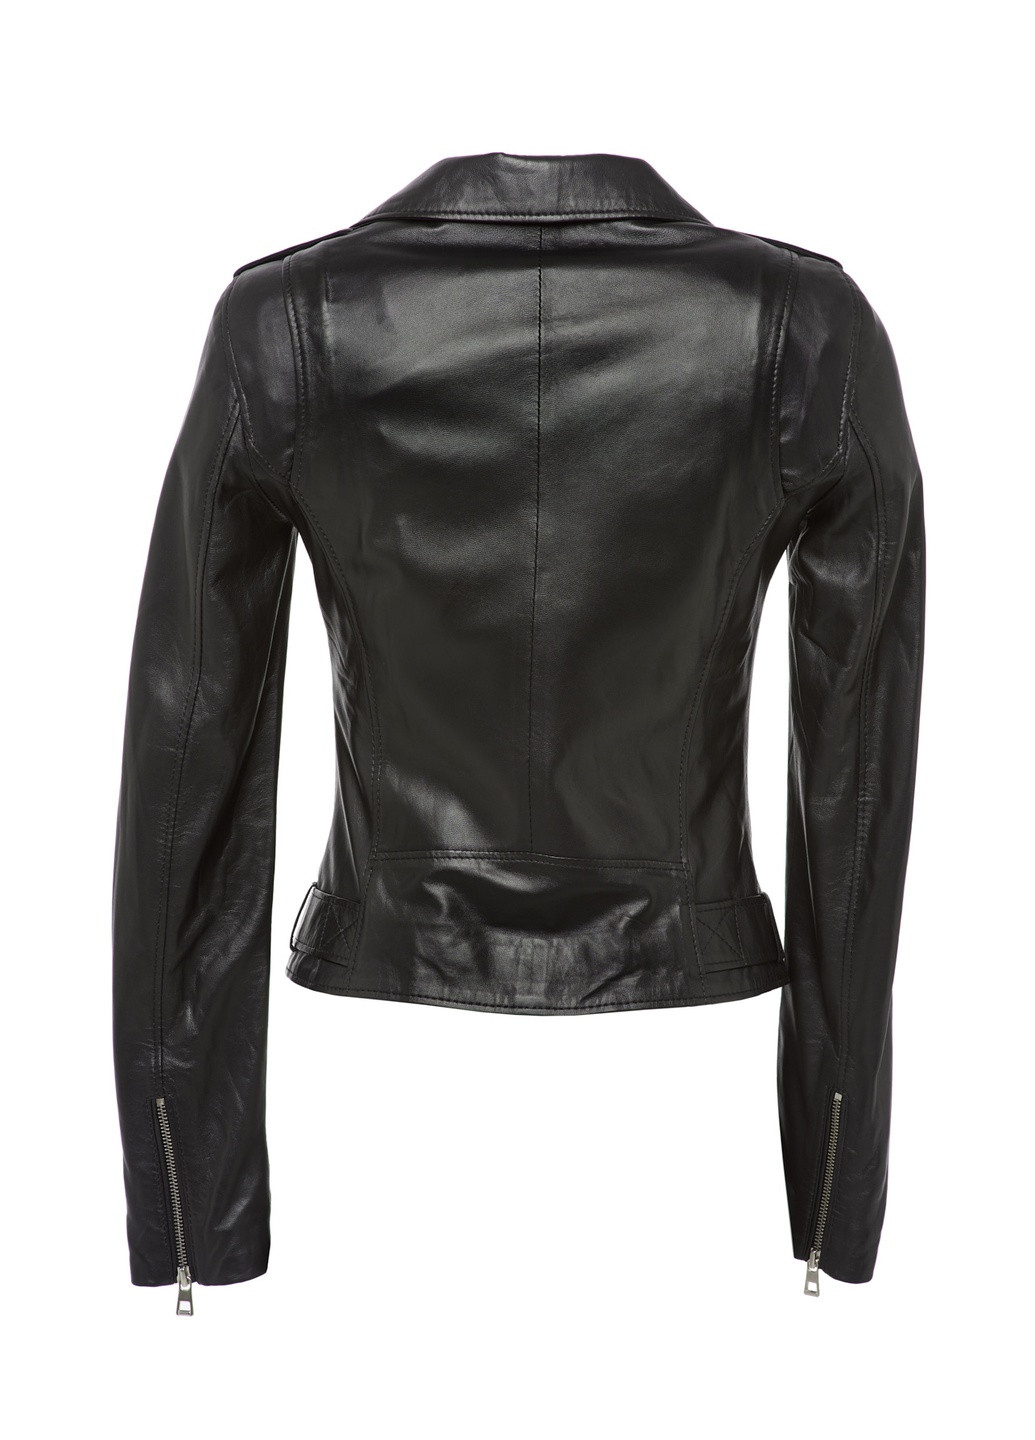 Черная демисезонная женская кожаная куртка из натуральной кожи весна осень демисезон косуха 1705 черная Actors